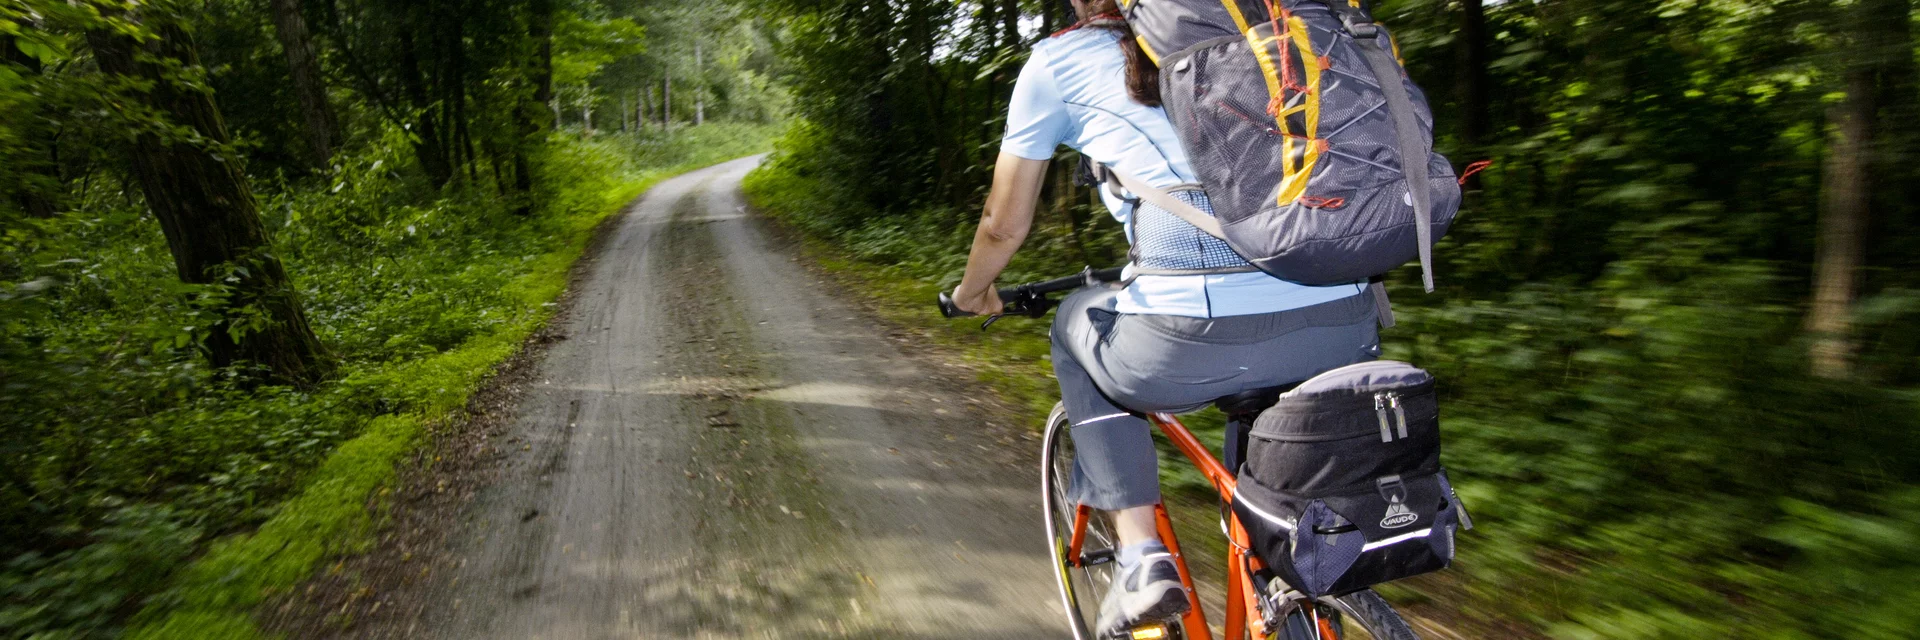 Fahrradfahrerin mit großem Rucksack | © Steiermark-Tourismus | Gerhard Eisenschink